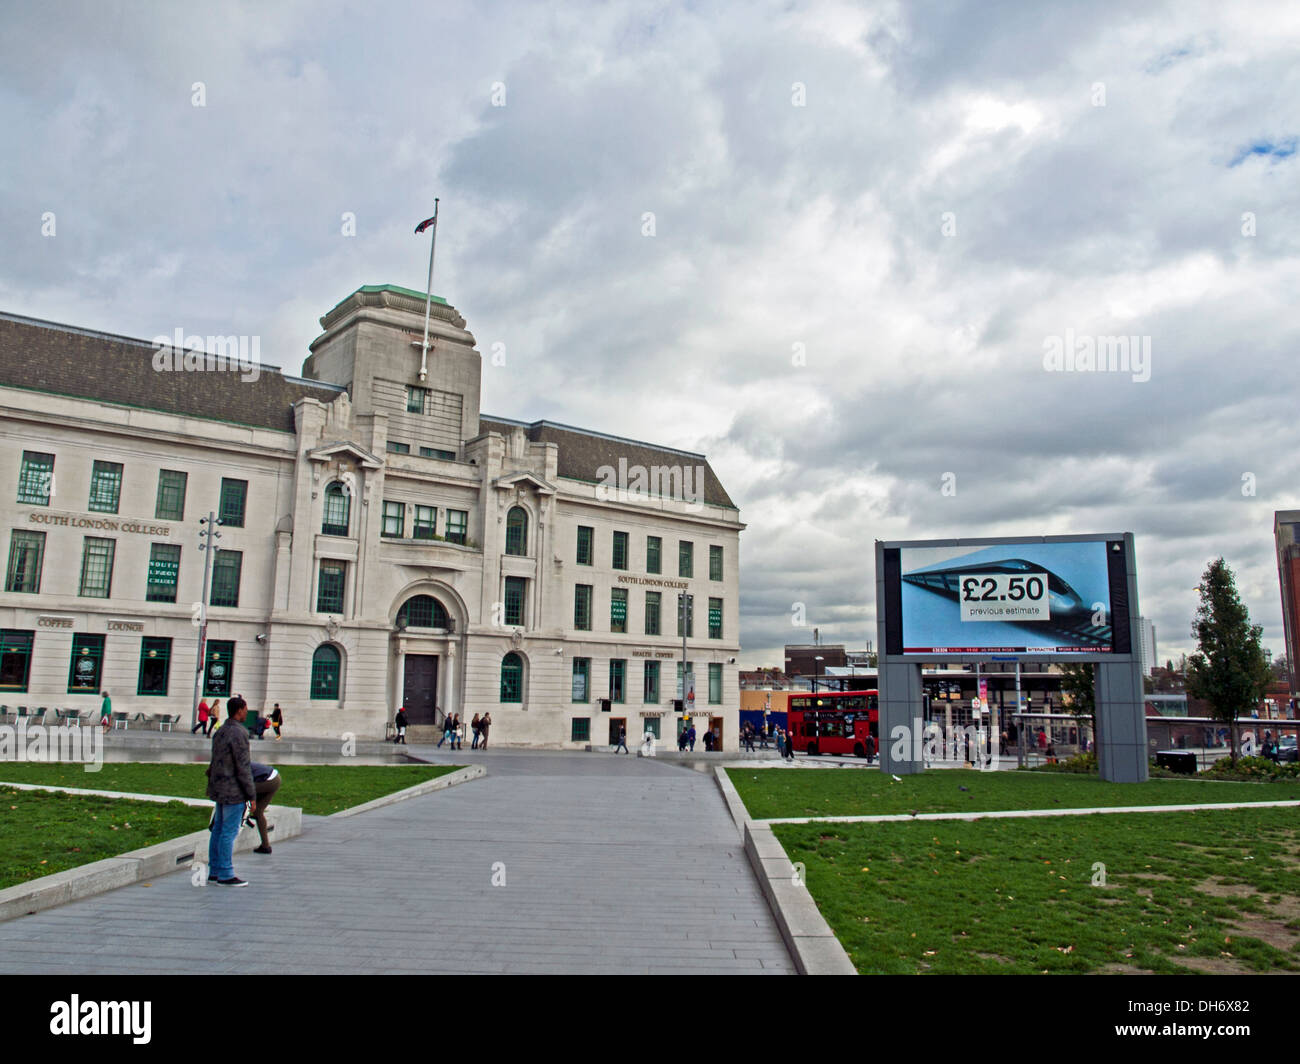 BBC Grand écran au Général Gordon Place, Woolwich, Londres, Angleterre, Royaume-Uni Banque D'Images